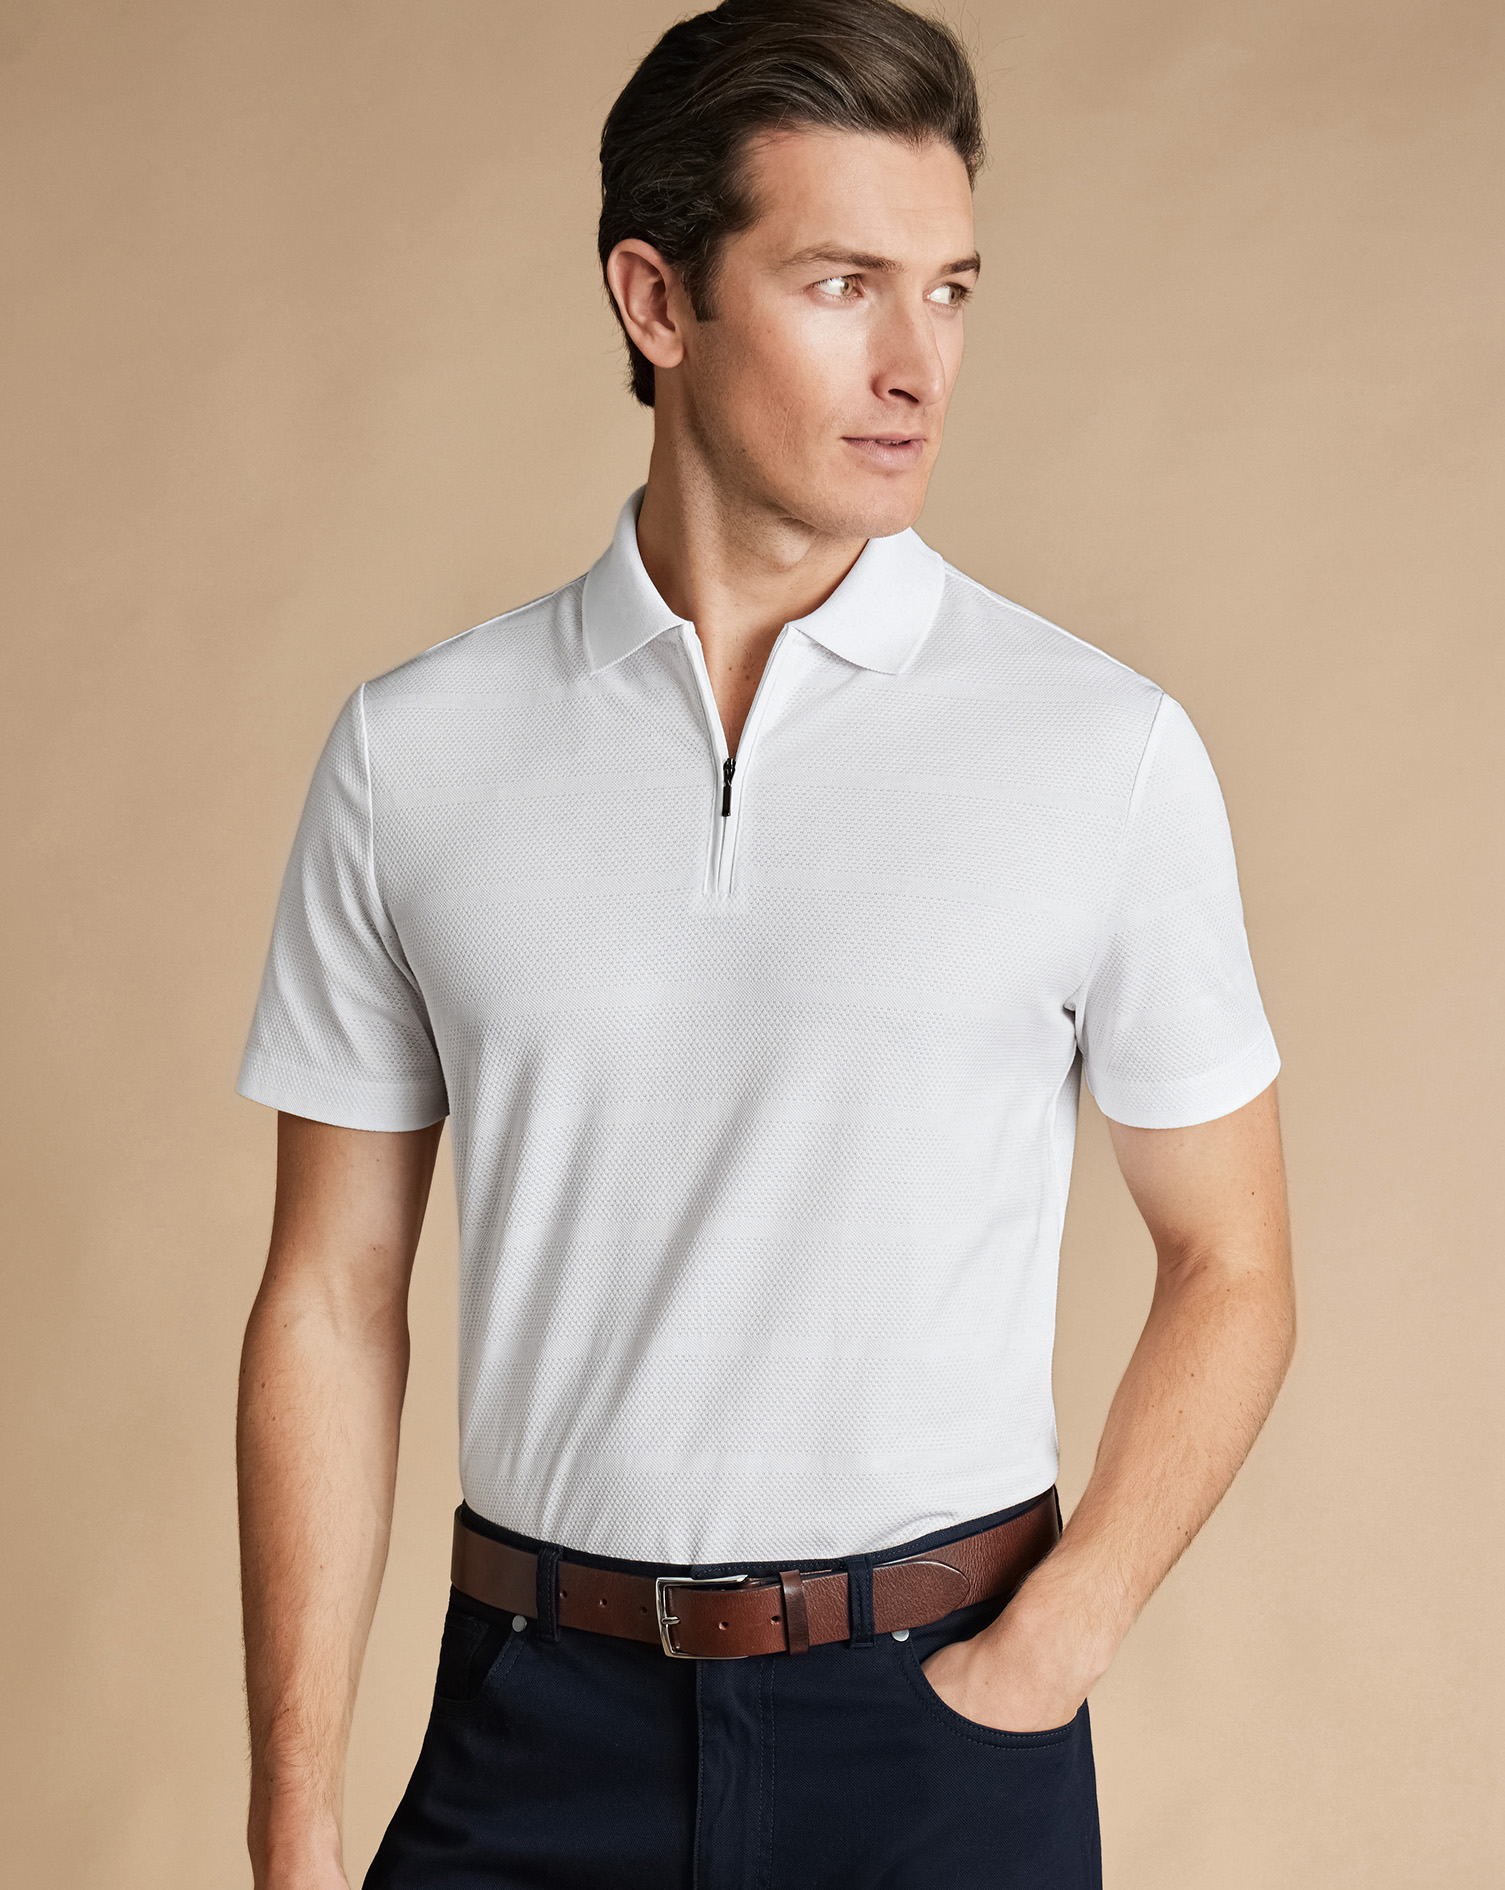 Men's Charles Tyrwhitt Popcorn Textured Tyrwhitt Cool Zip-Neck Stripe Polo Shirt - White Size Large 